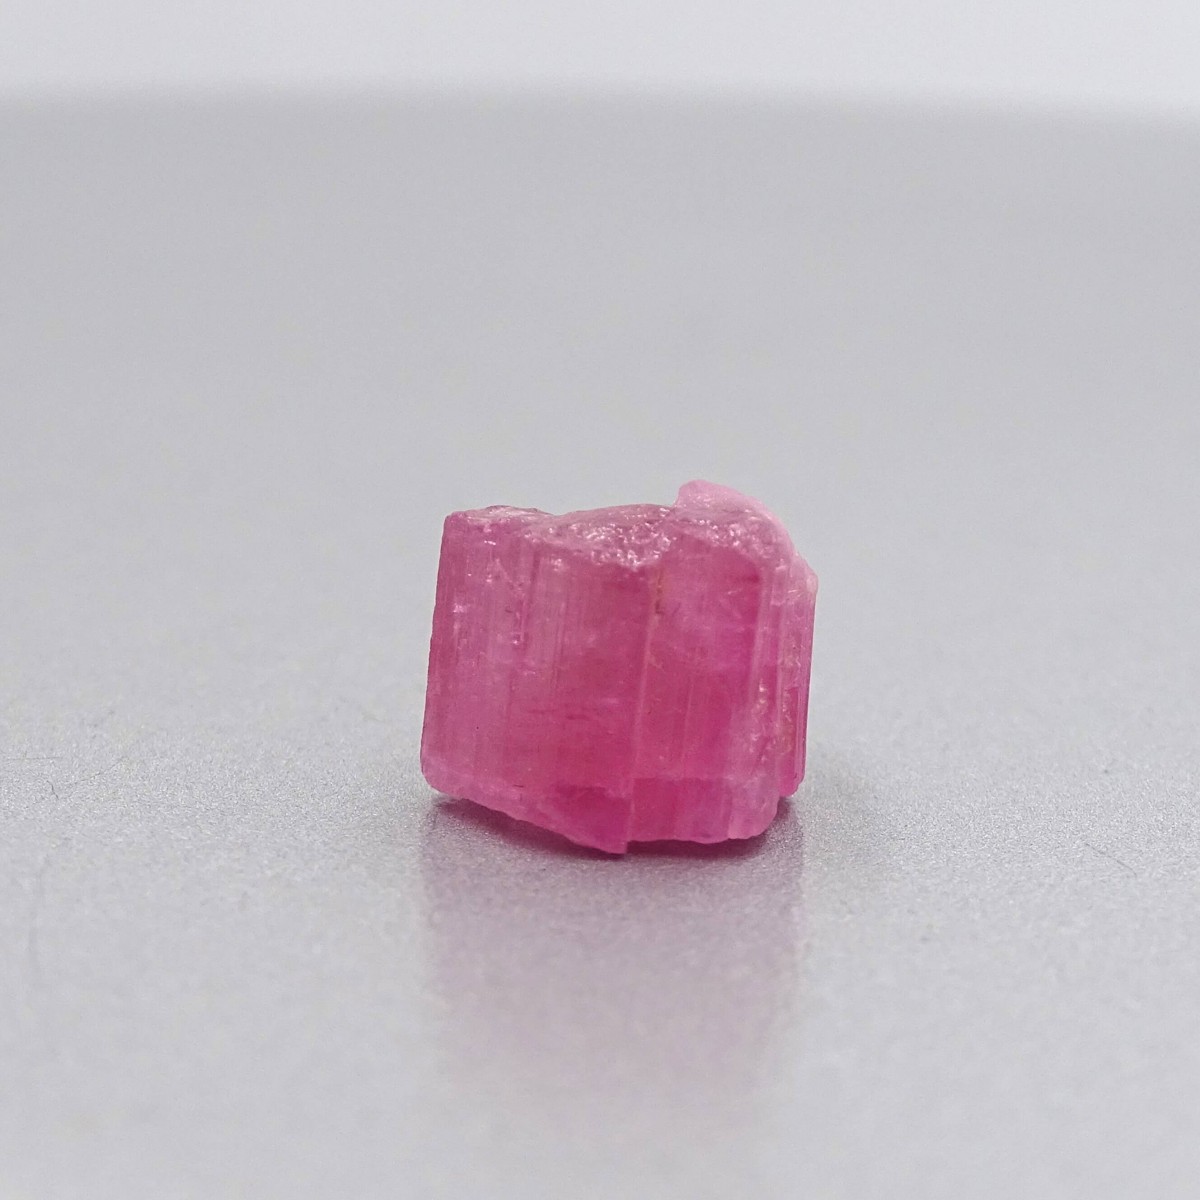 Turmalín růžový přírodní krystal 2,5g, Afganistán